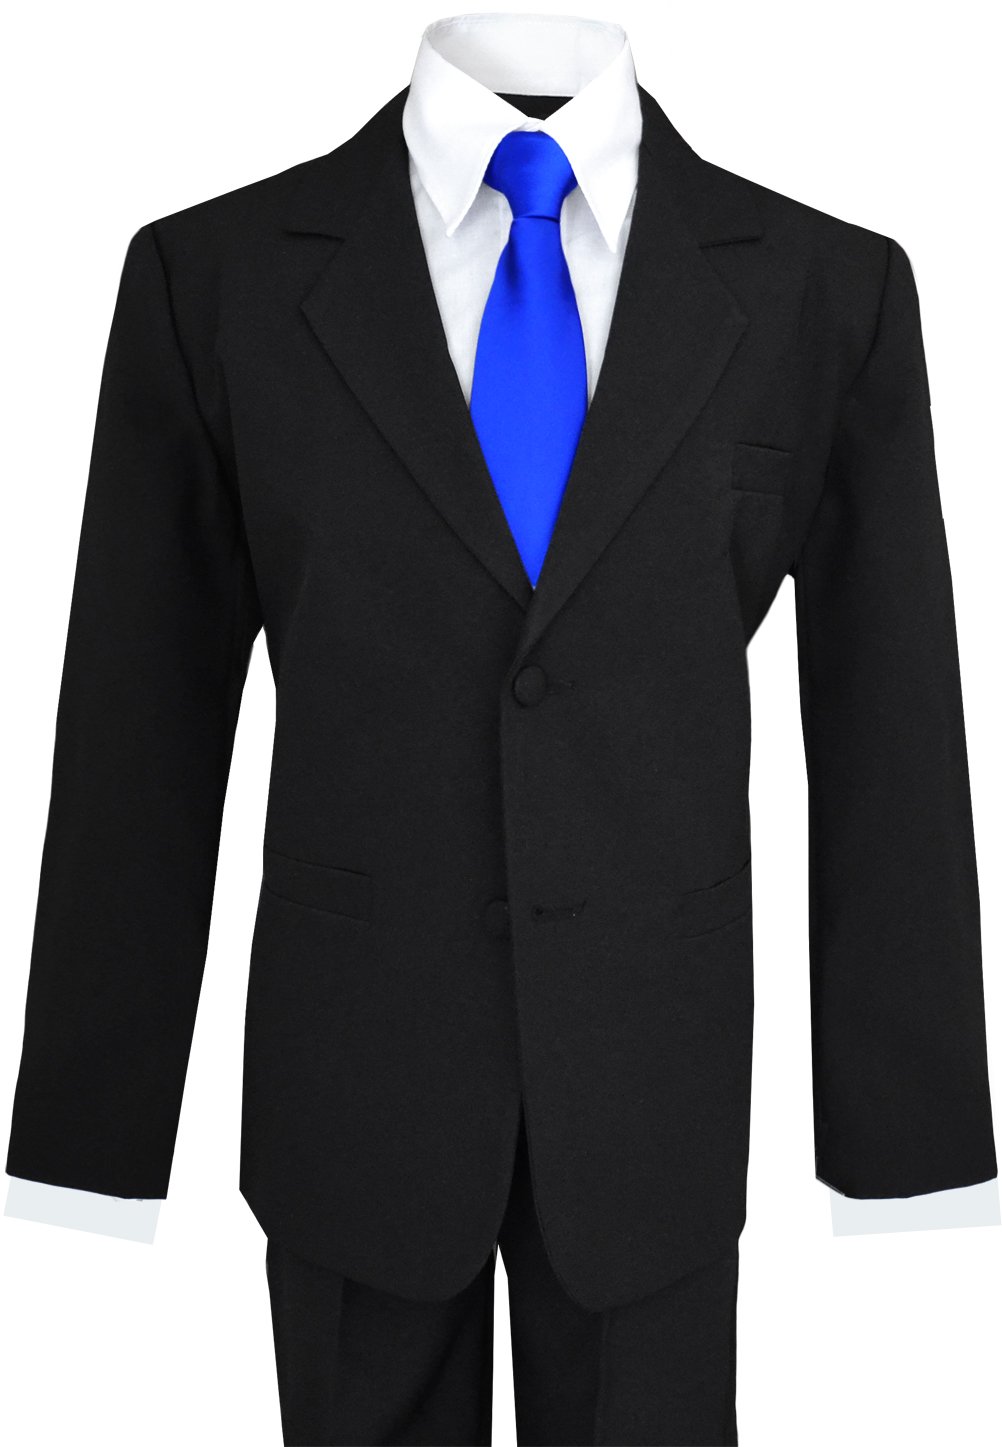 Black suit blue tie: Classic Elegance插图3